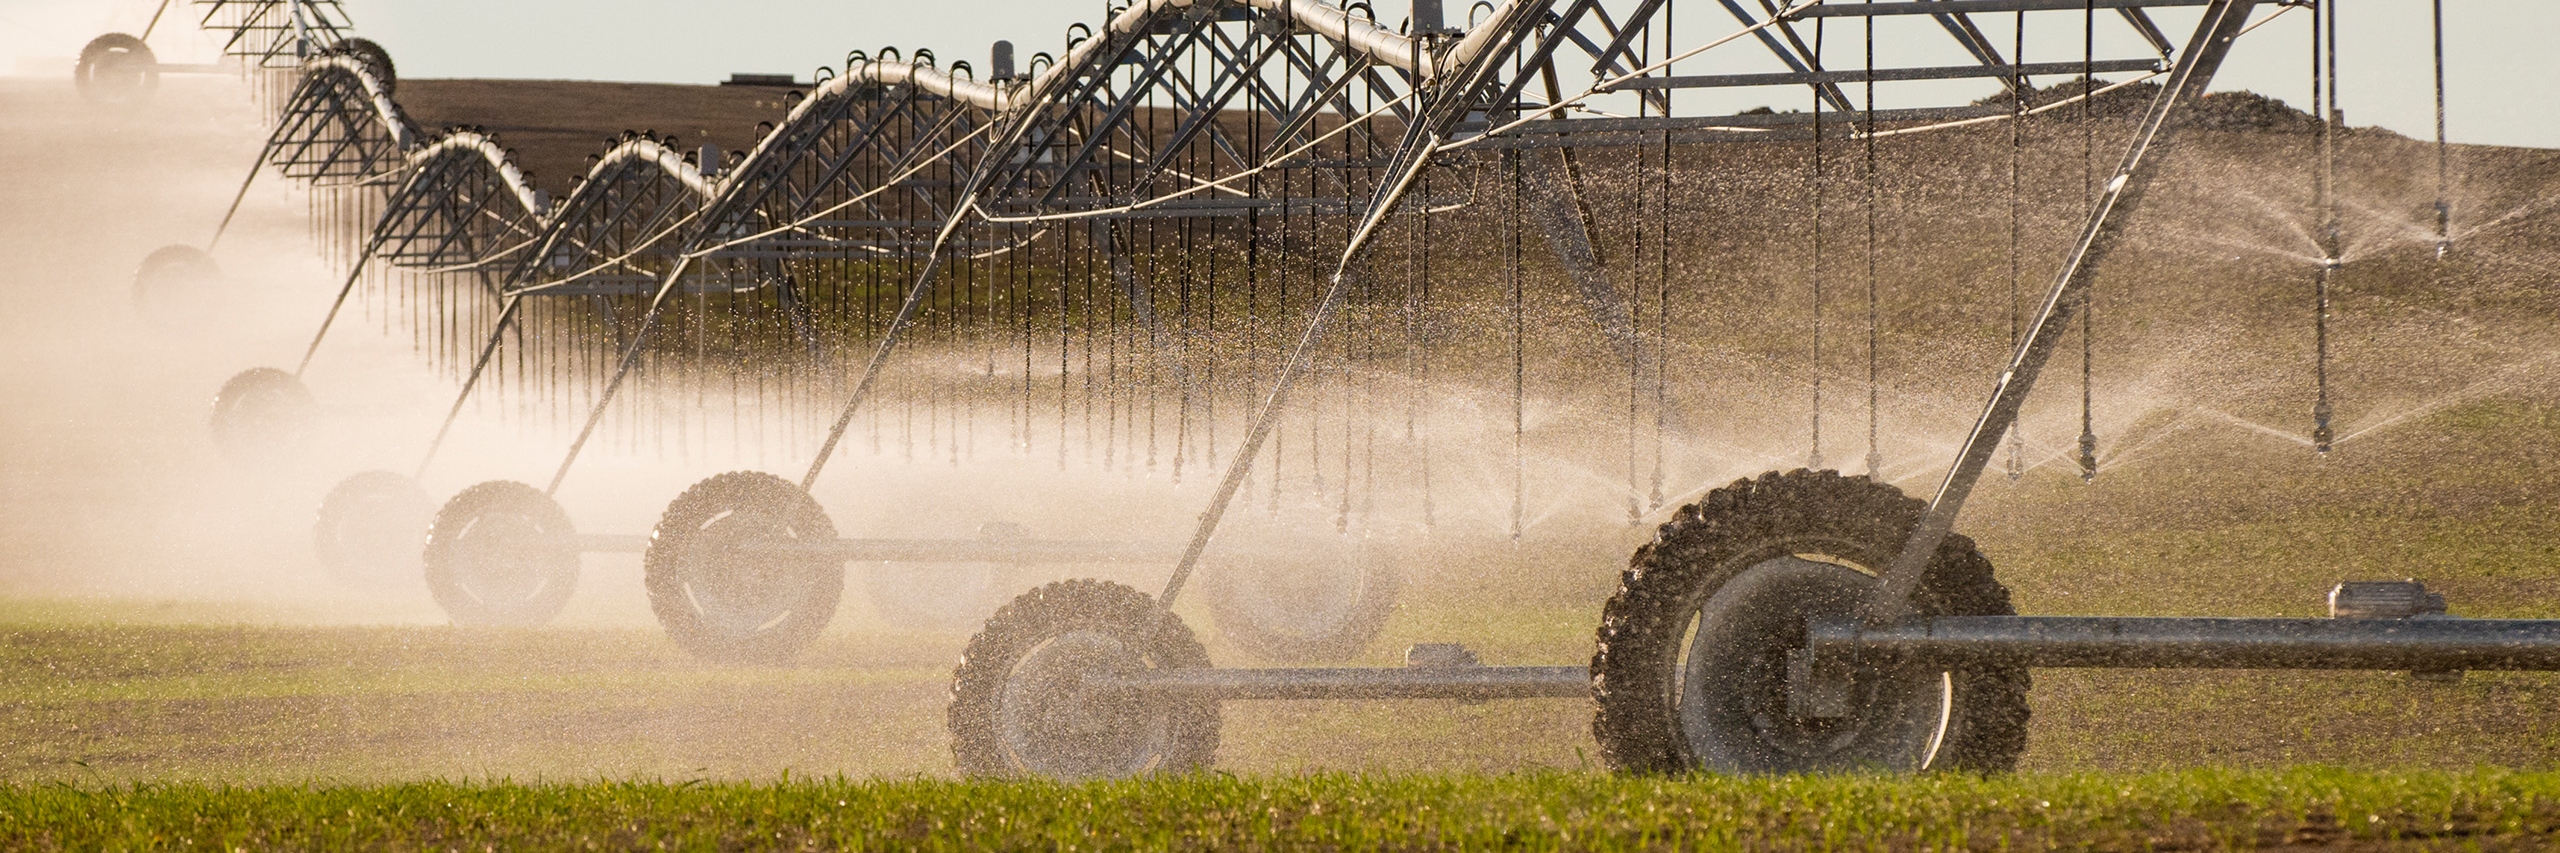 Irrigation sprinkler watering crop field on farm